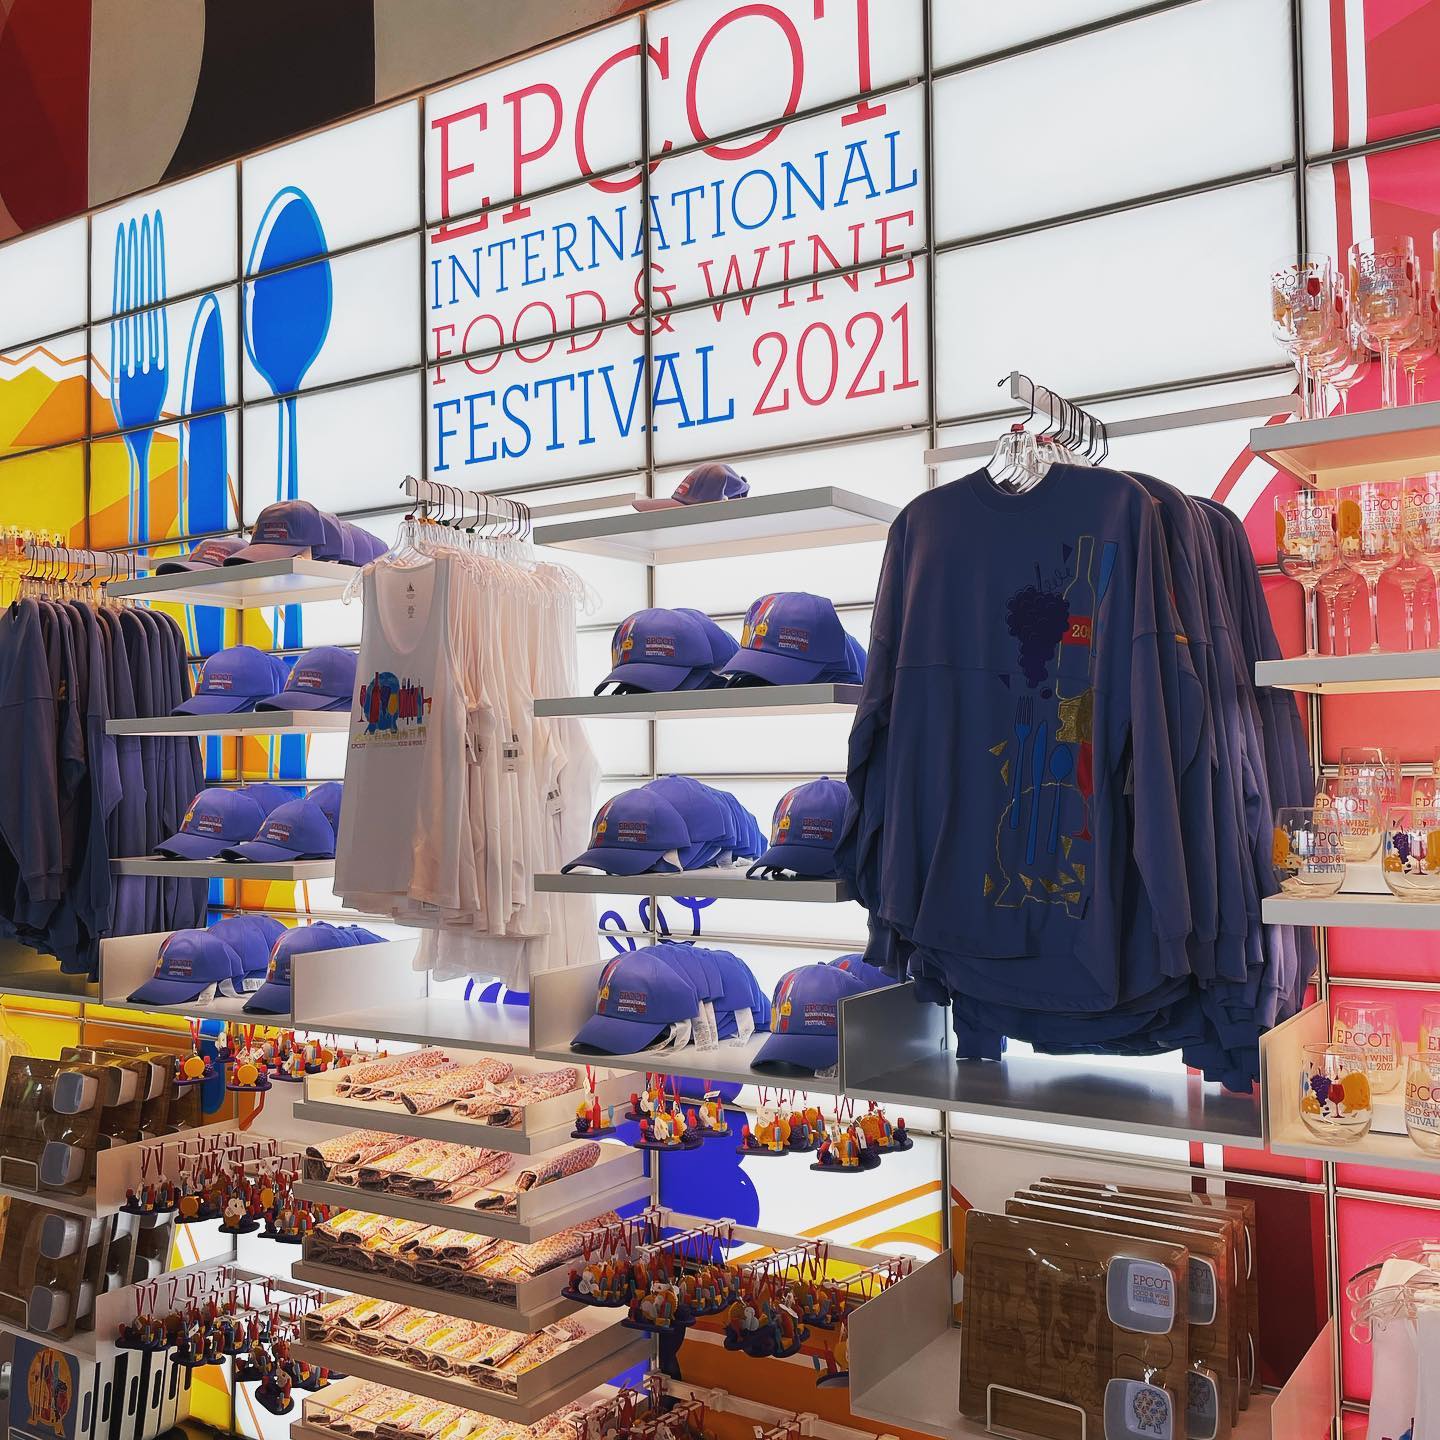 Productos de Disney - Tienda de creaciones en Epcot